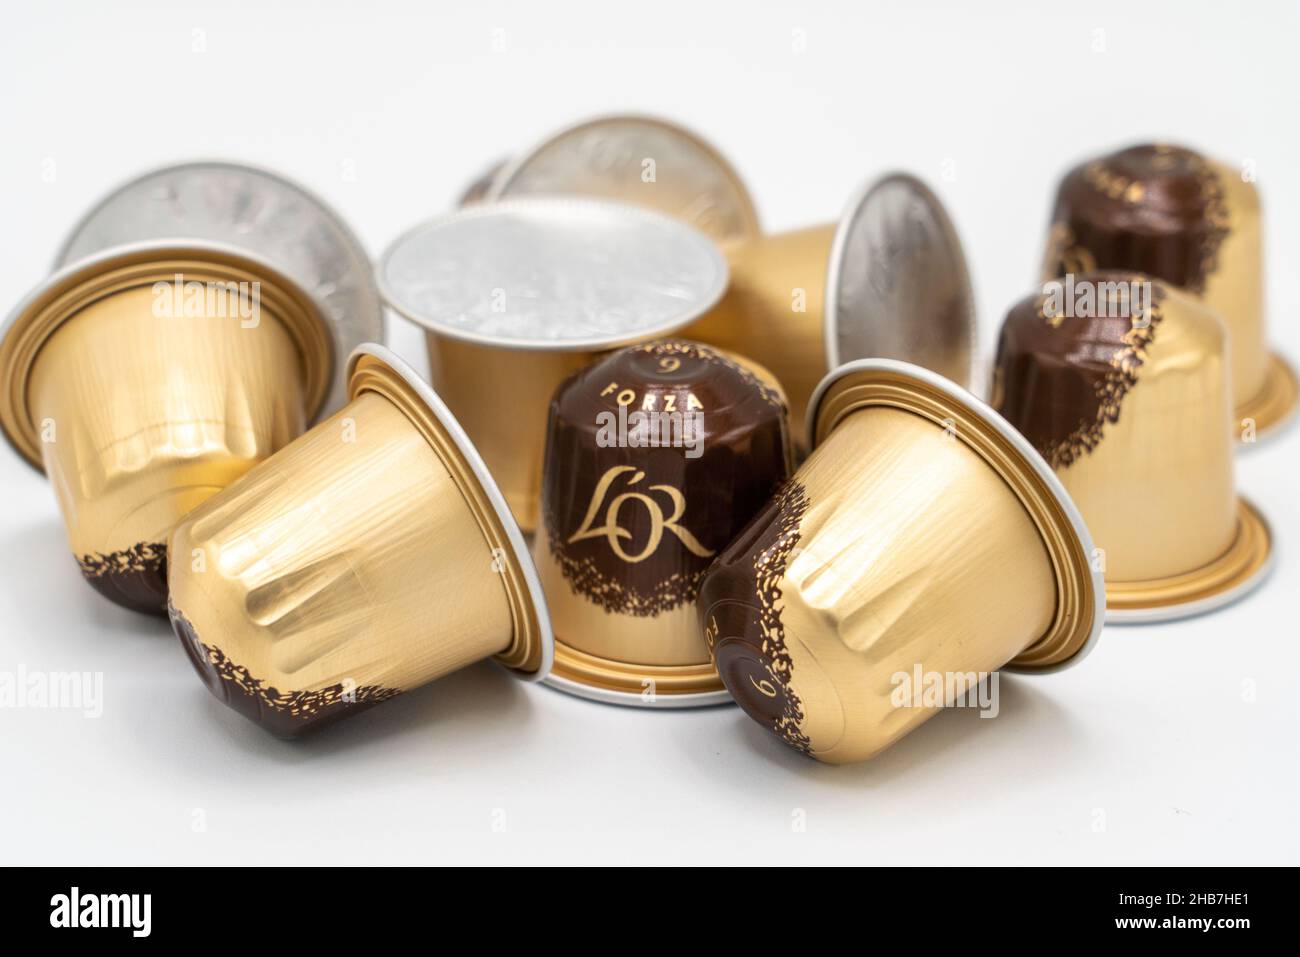 Lloret de Mar, Spanien - 12.17.2021: Eine Handvoll philips l'Or-Kapseln für die Kaffeemaschine der Marke Barista, isoliert auf Weiß Stockfoto